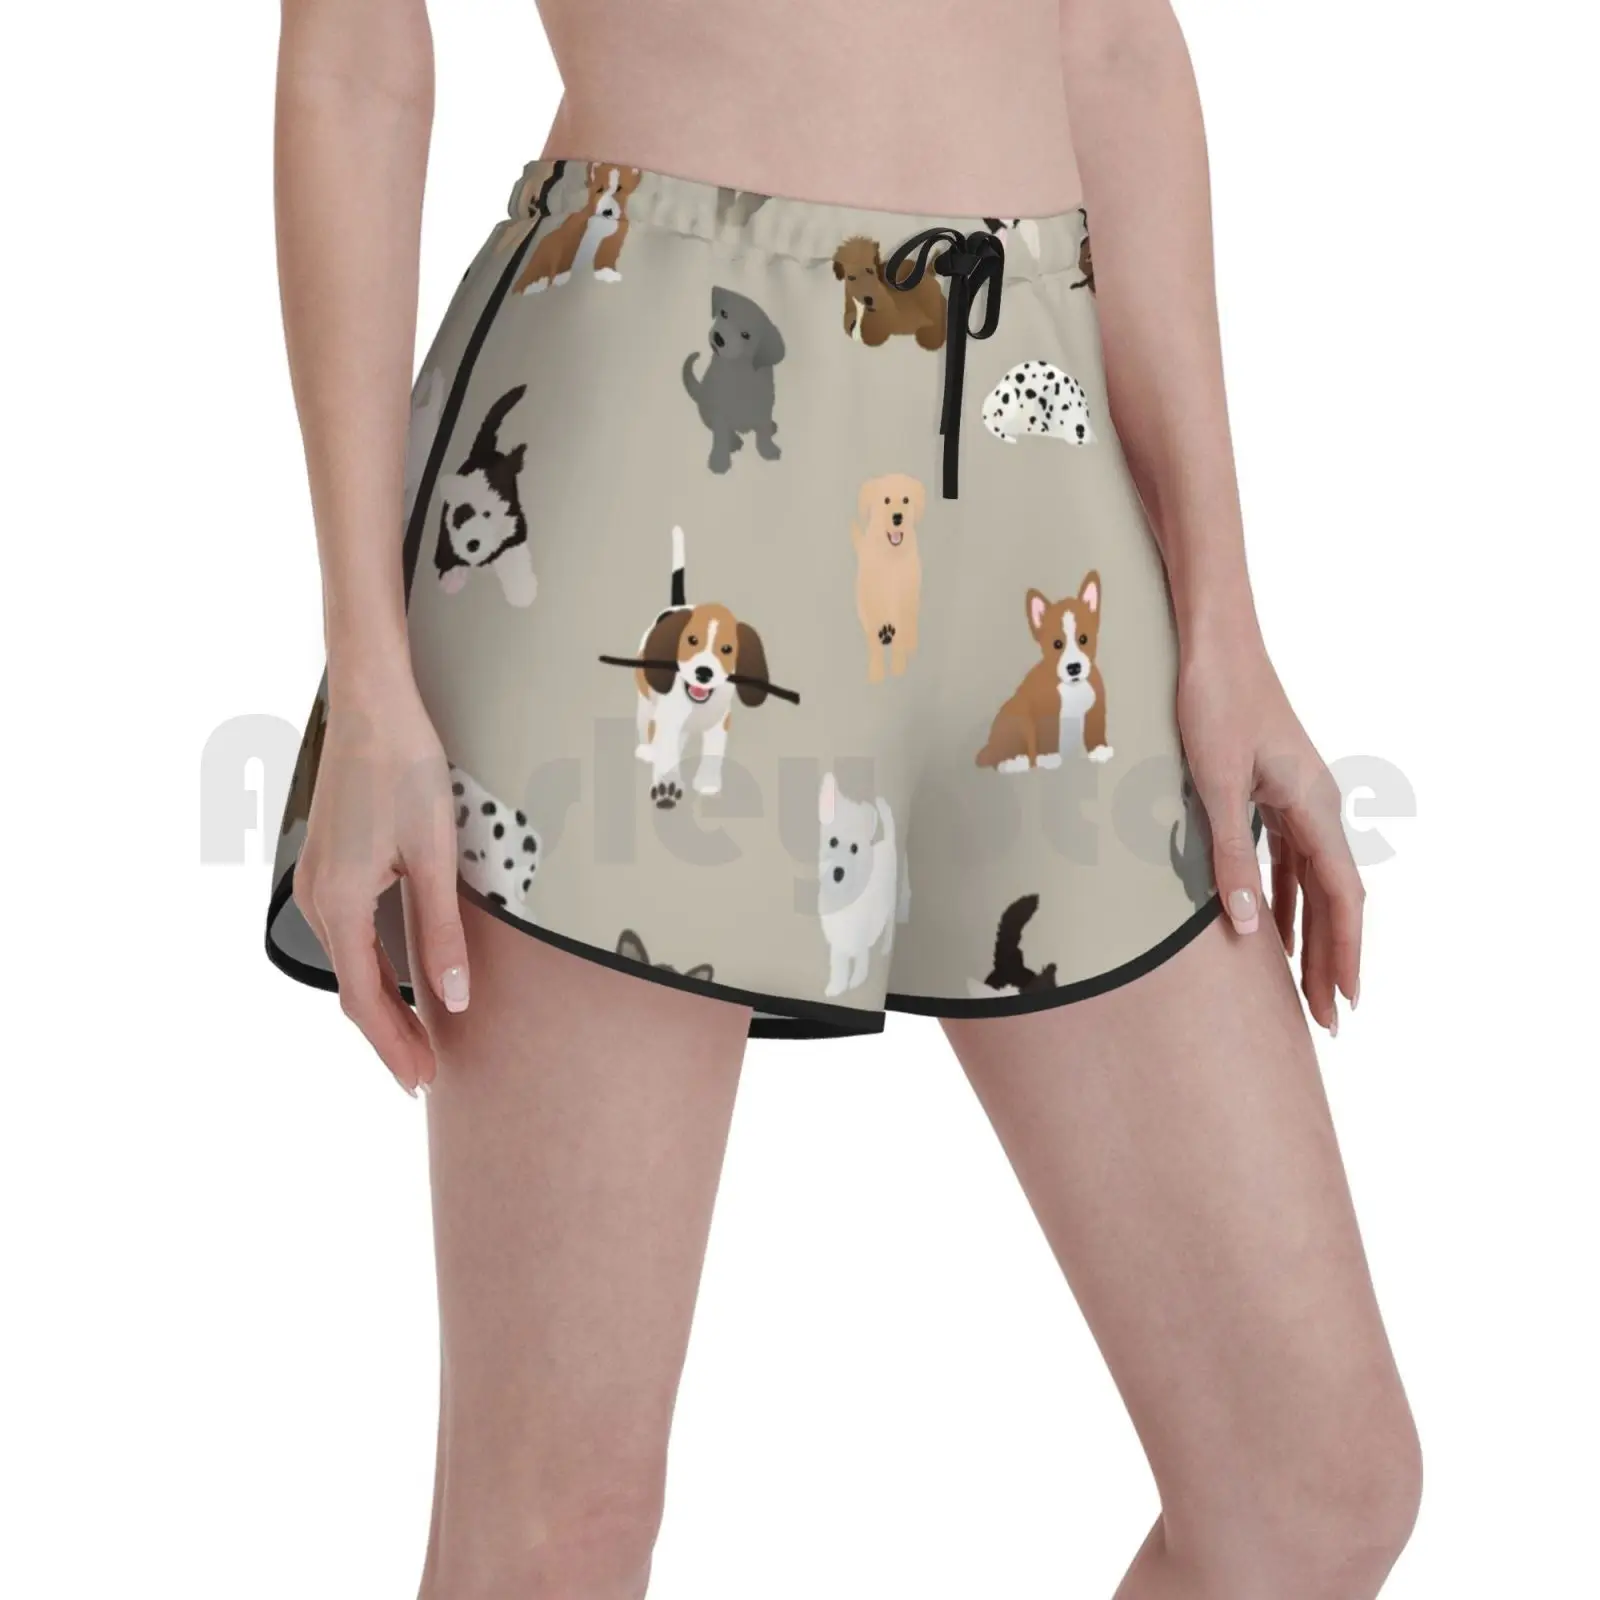 

Щенки 2: более Пупс Плавание шорты Для женщин Пляжные шорты собак щенков собака животное Животные щенок шаблон характер